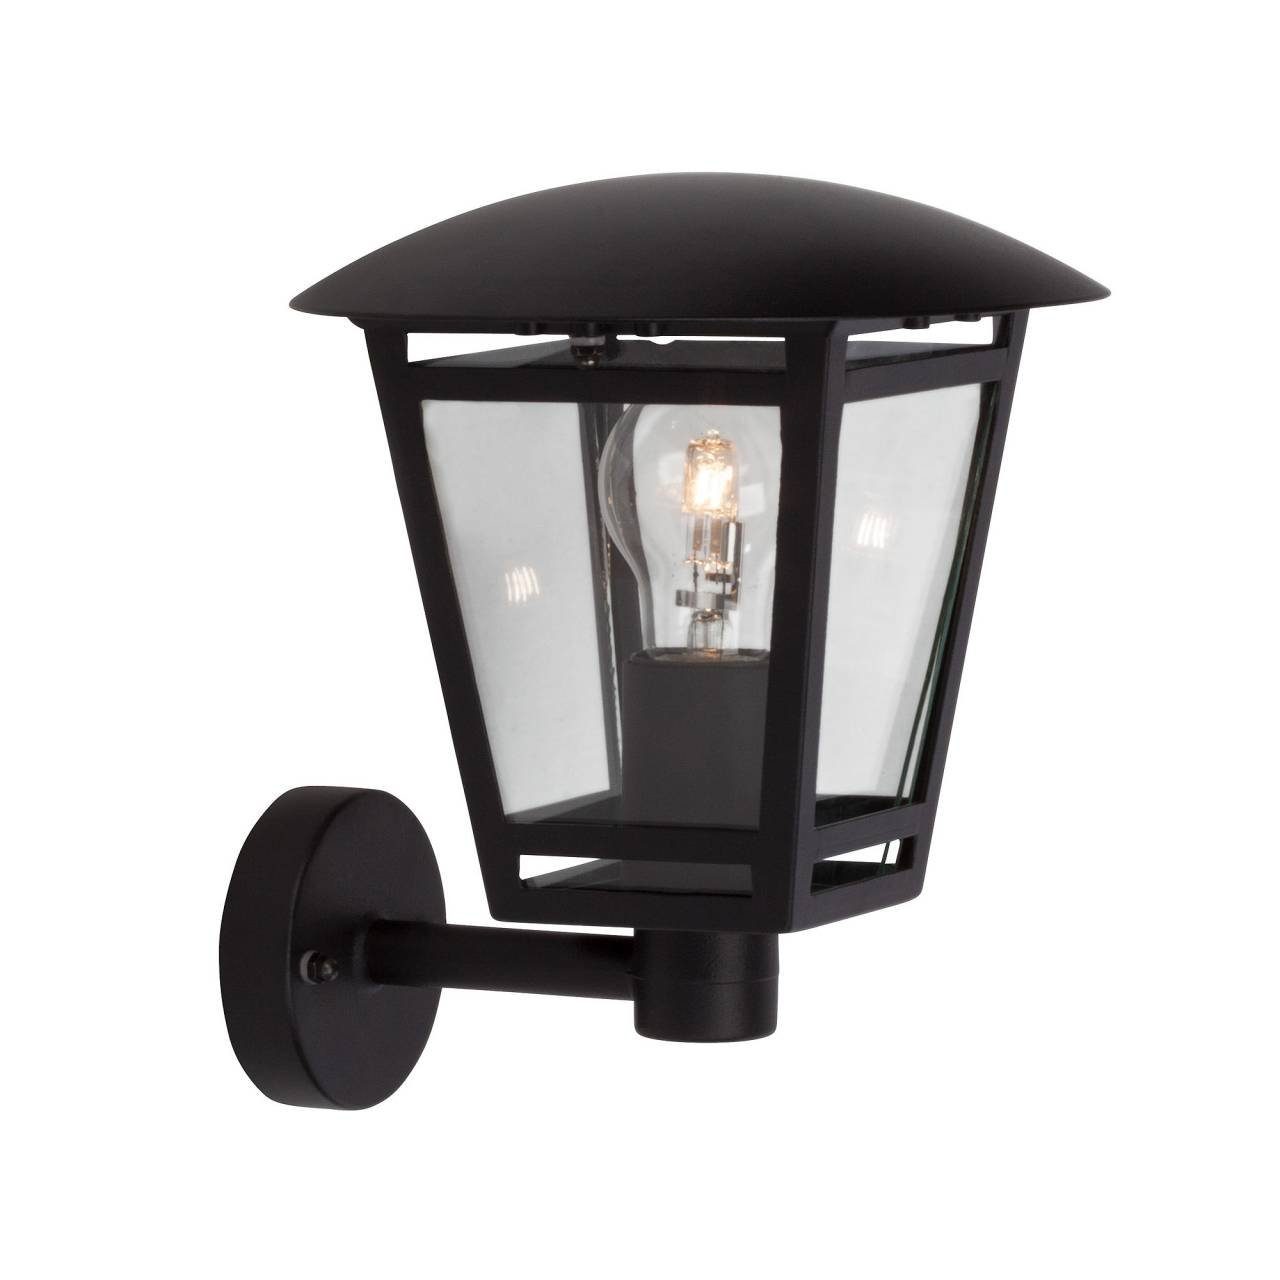 Brilliant LED Außen-Wandleuchte stehend E27, Lampe 40W, A60, Außenwandleuchte 1x Riley Riley, schwarz geeig